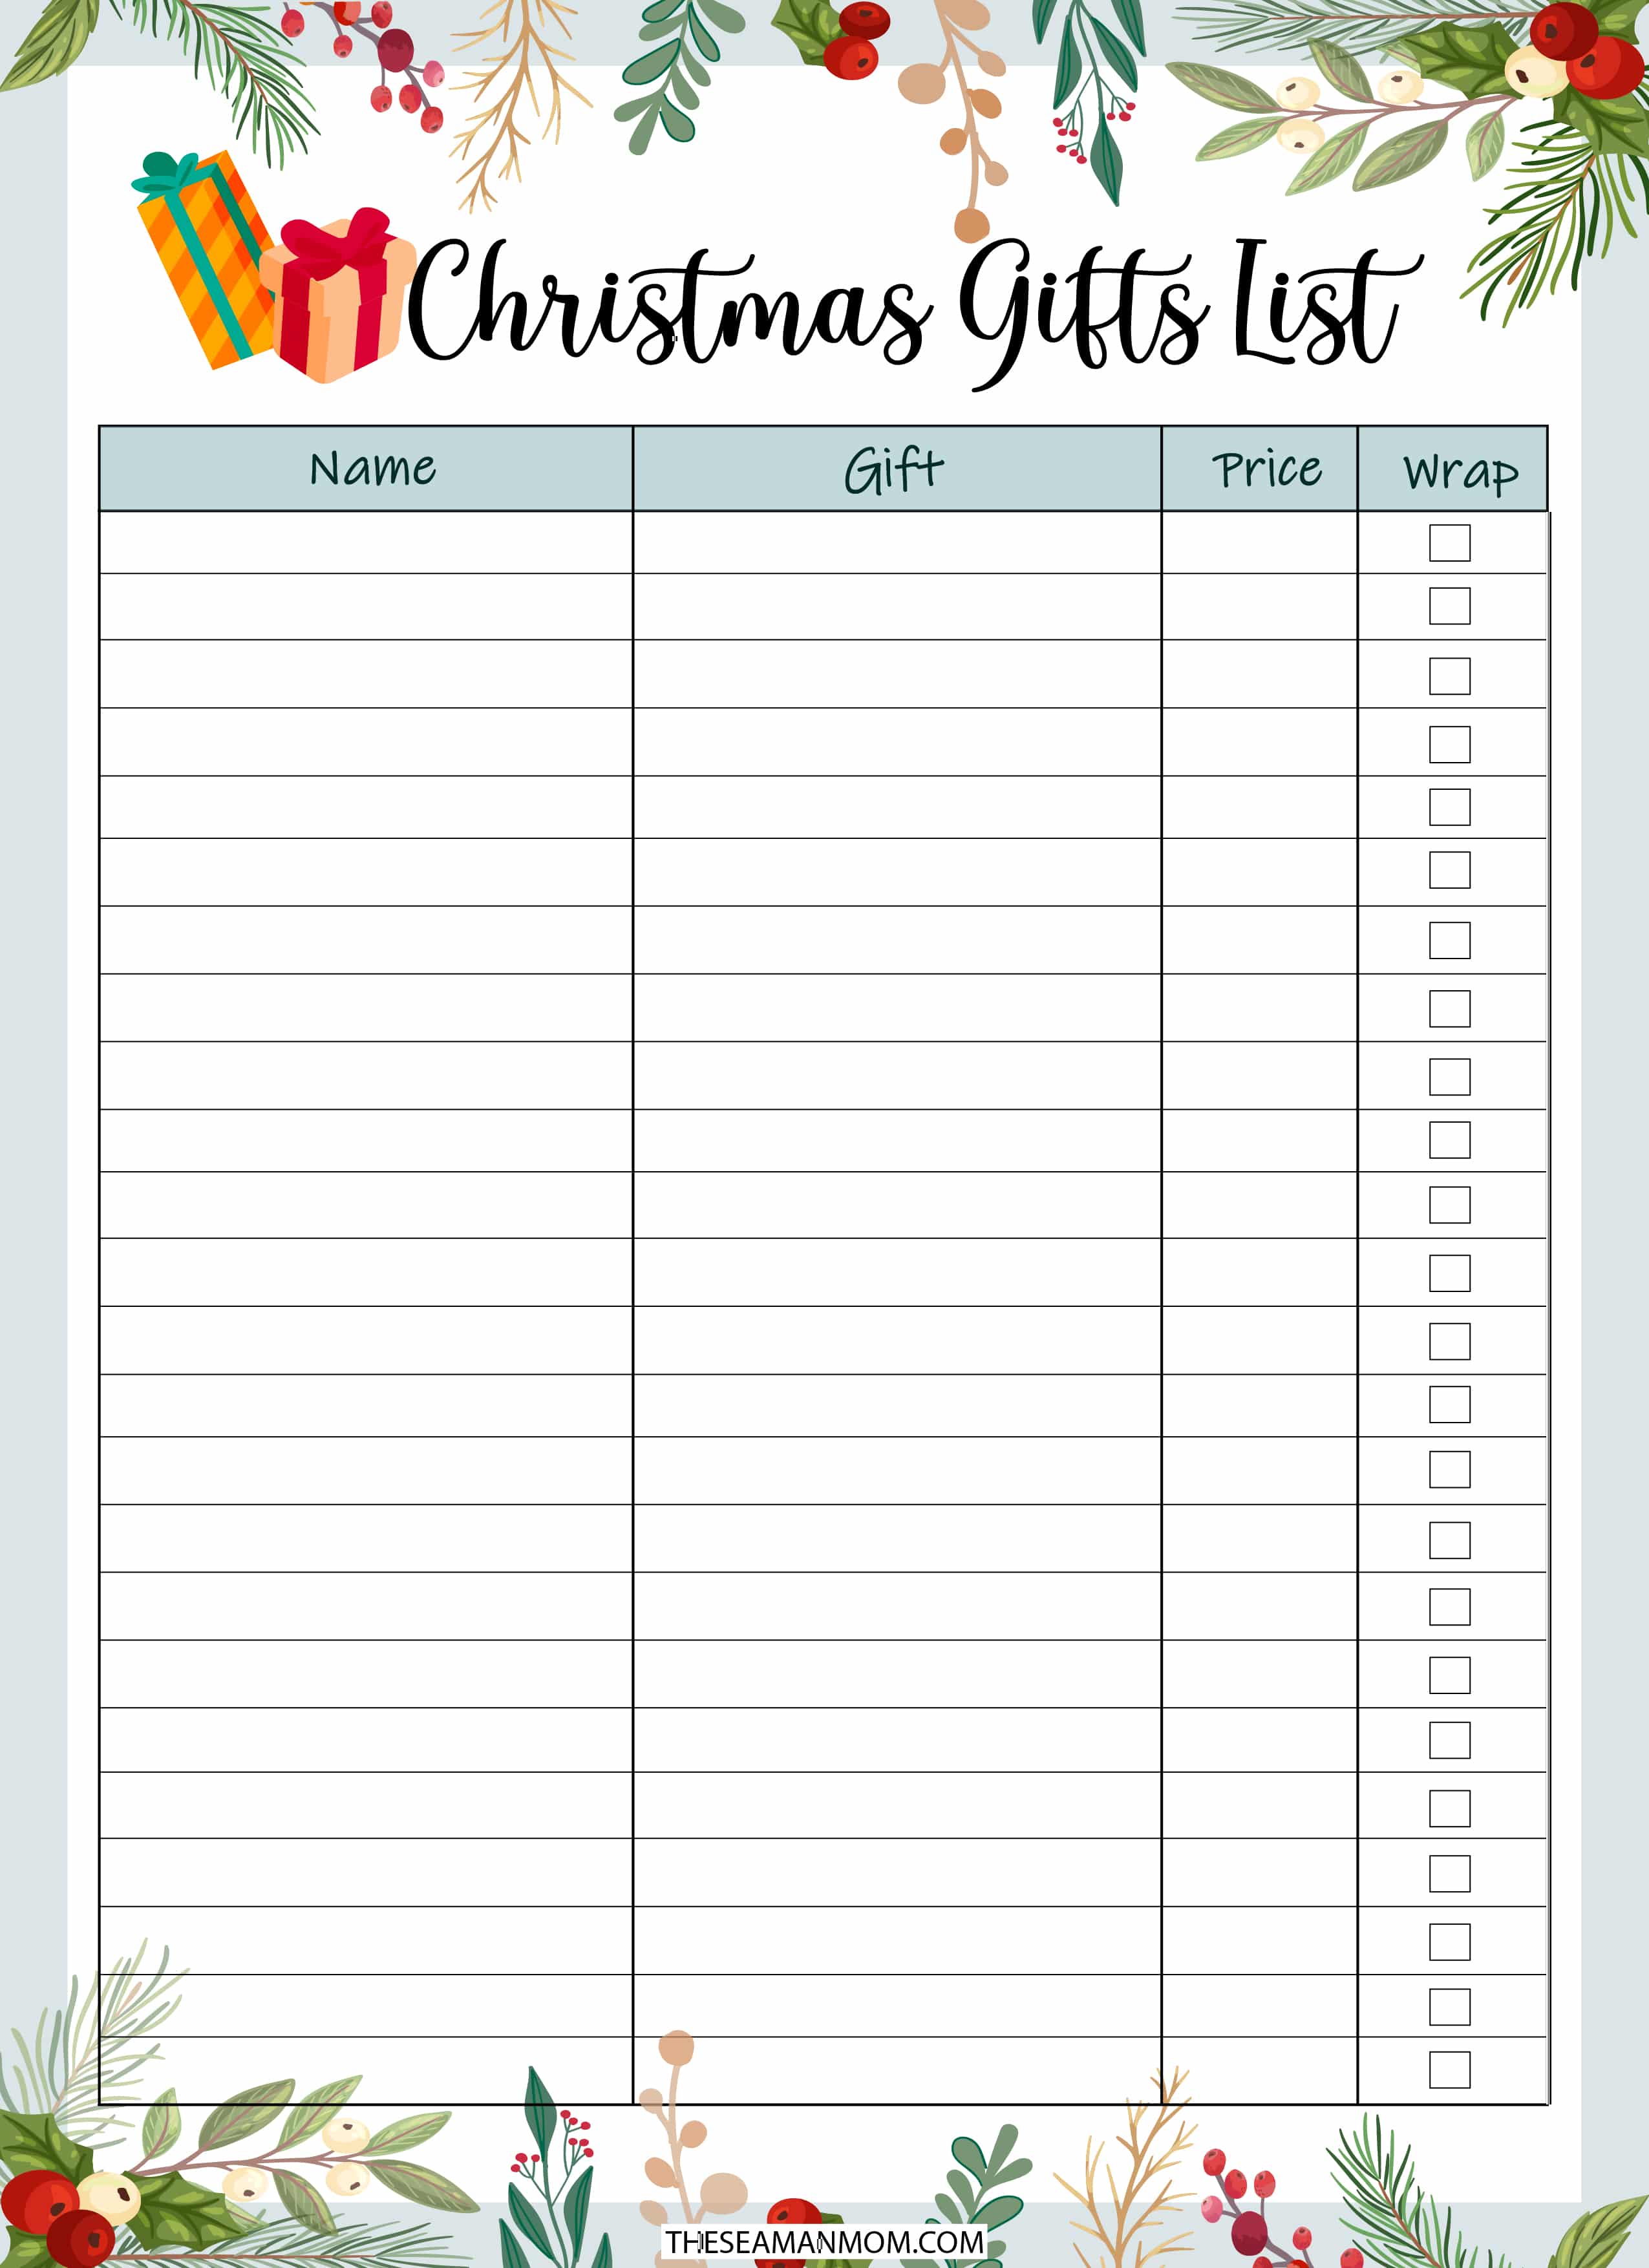 Image of printable Christmas gift list